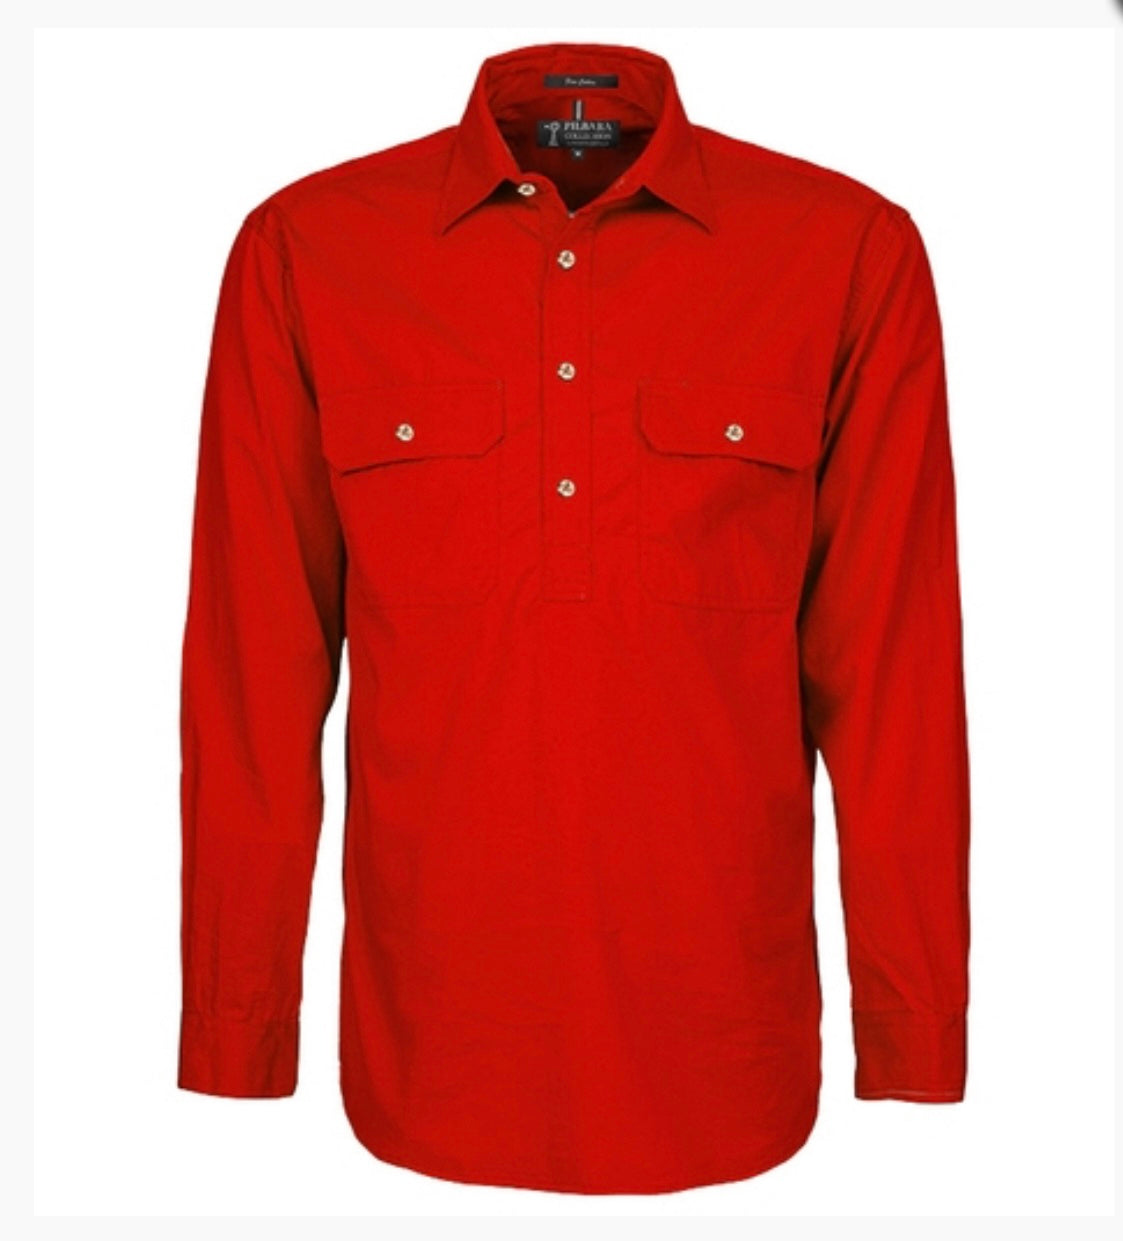 Ritemate - Men’s L/S Shirt Red